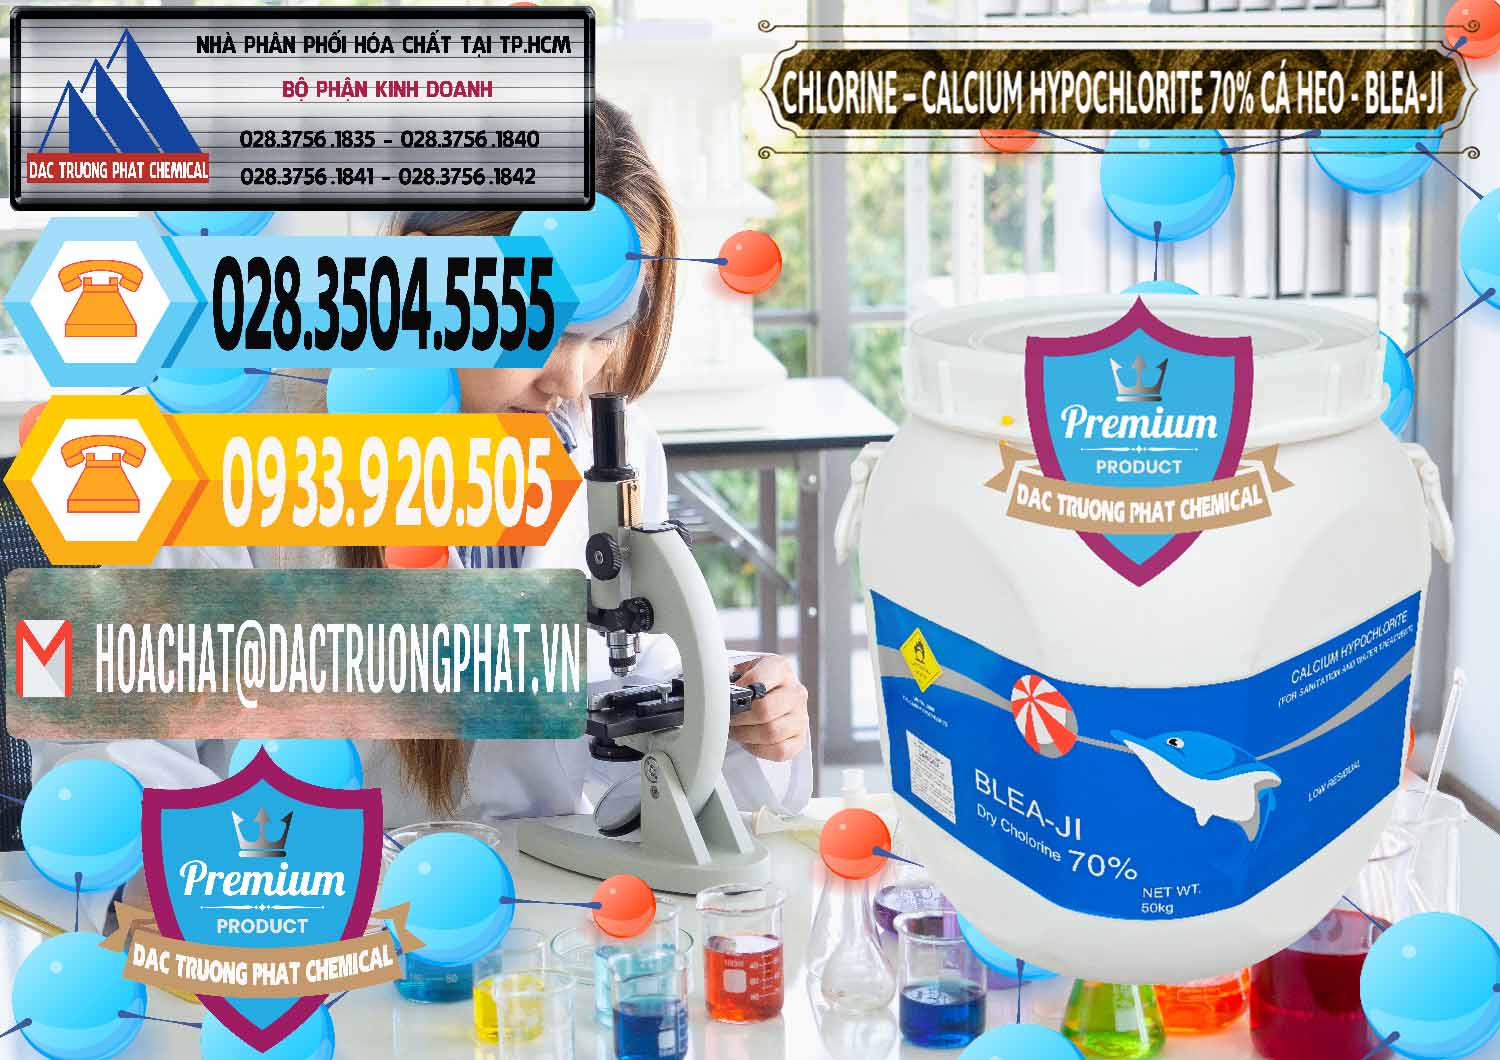 Công ty nhập khẩu & bán Clorin - Chlorine Cá Heo 70% Blea-Ji Trung Quốc China - 0056 - Cty chuyên cung cấp và bán hóa chất tại TP.HCM - hoachattayrua.net